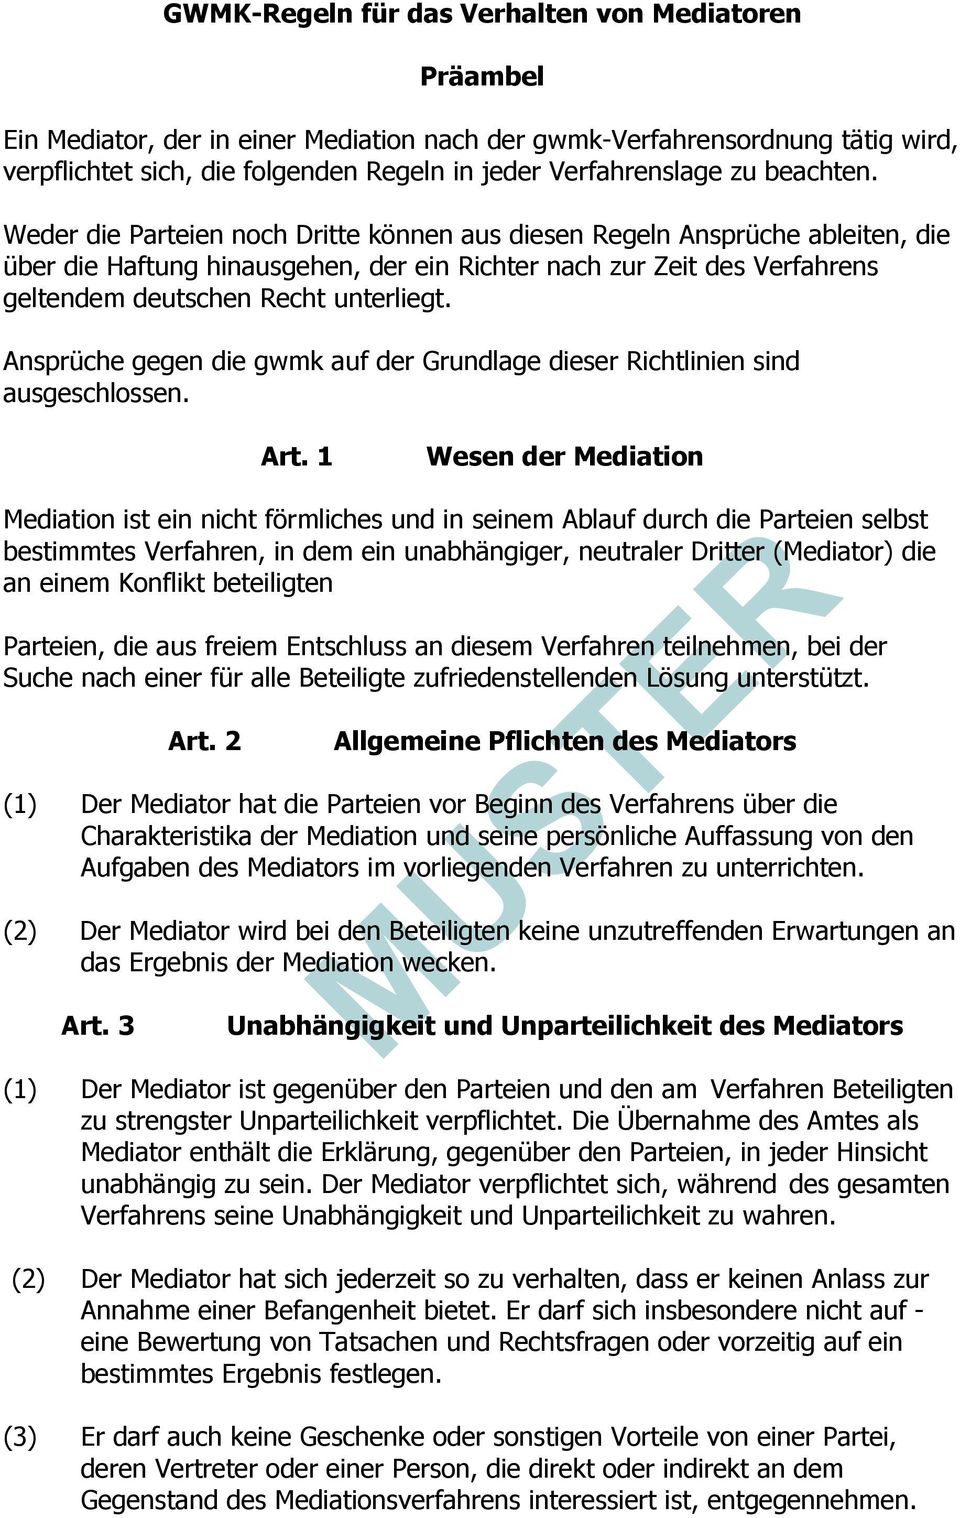 Weder die Parteien noch Dritte können aus diesen Regeln Ansprüche ableiten, die über die Haftung hinausgehen, der ein Richter nach zur Zeit des Verfahrens geltendem deutschen Recht unterliegt.